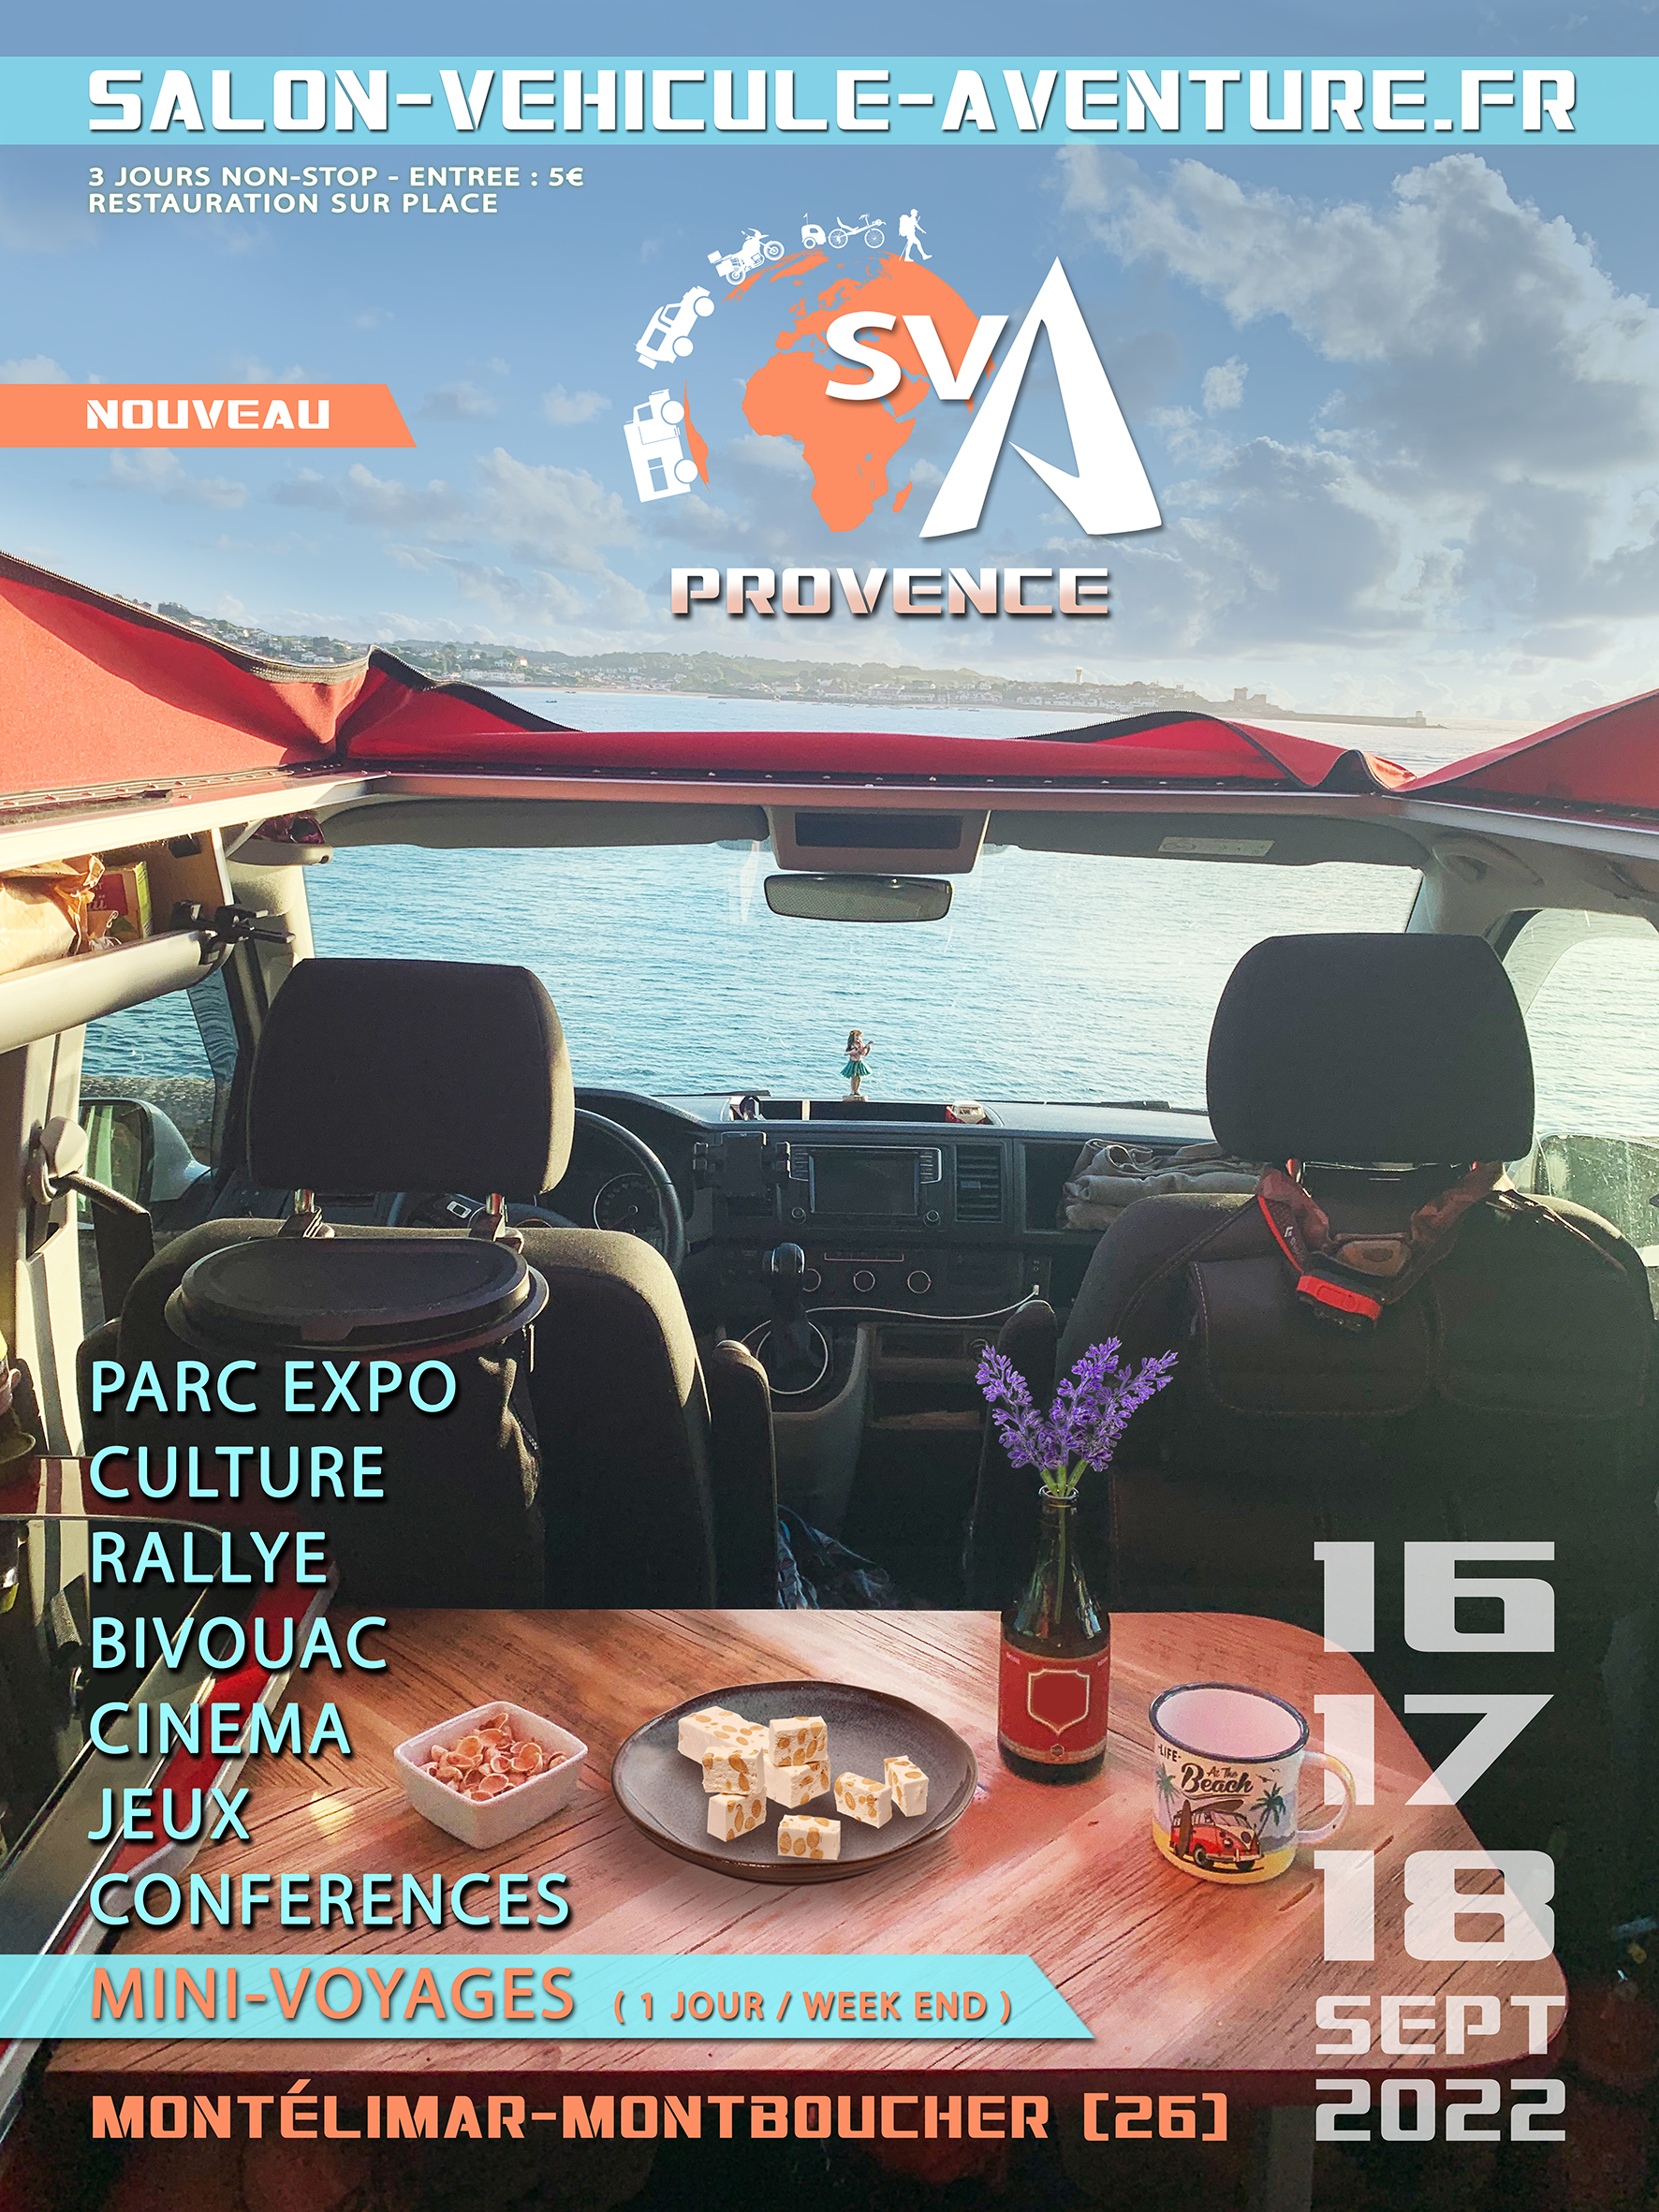  LE SVA PROVENCE septembre 2022 Montélimar 1ère édition Aff-SVA-Provence-WEB